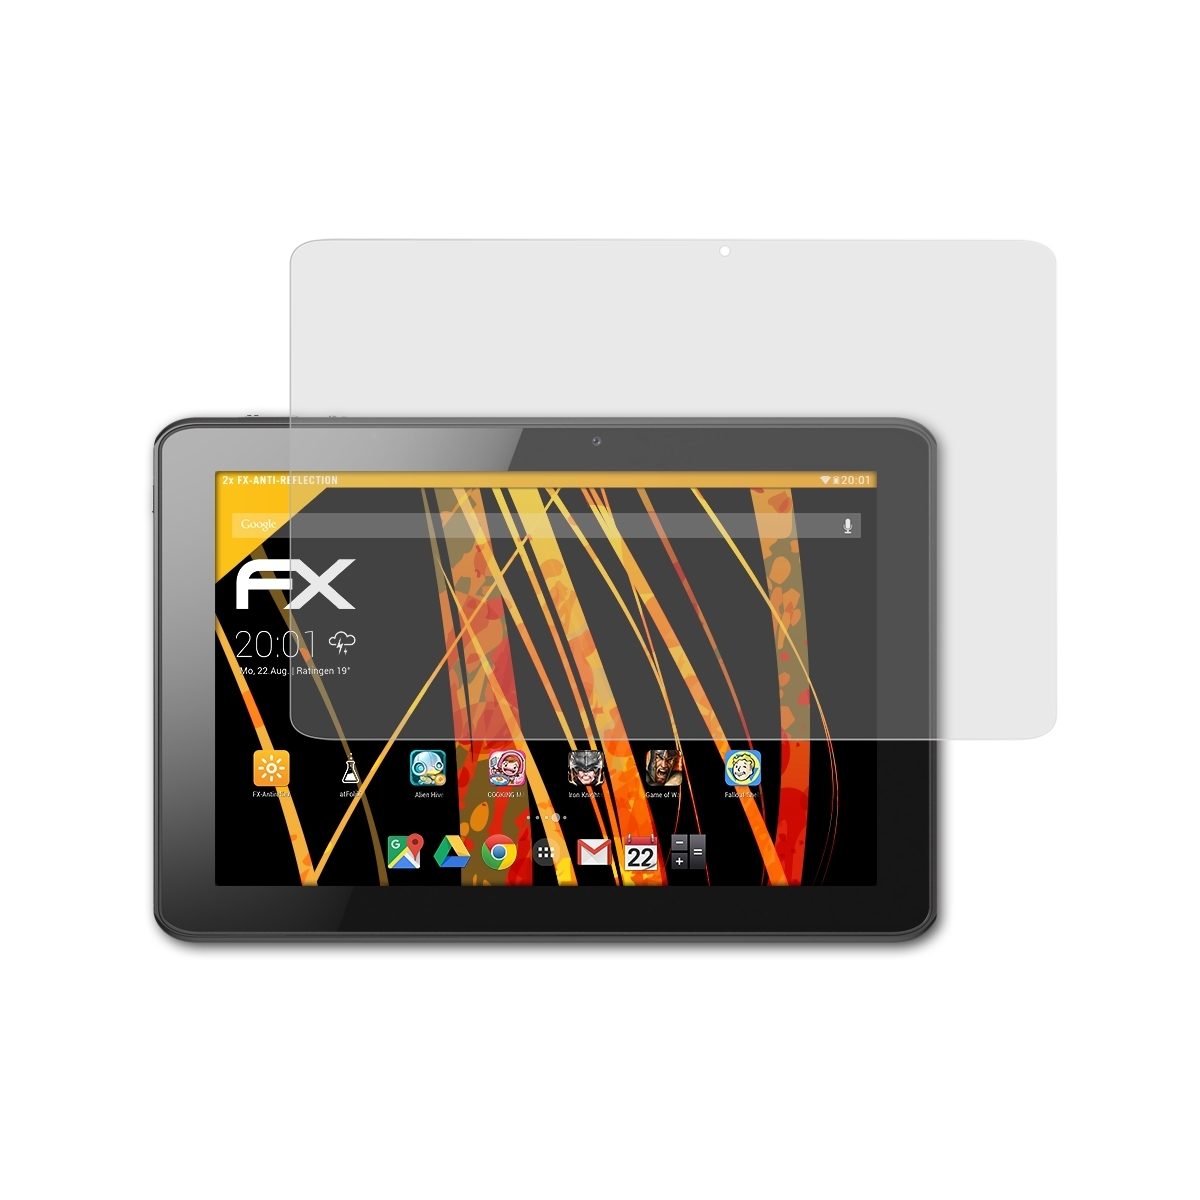 Iconia ATFOLIX Displayschutz(für A511) 2x Acer FX-Antireflex